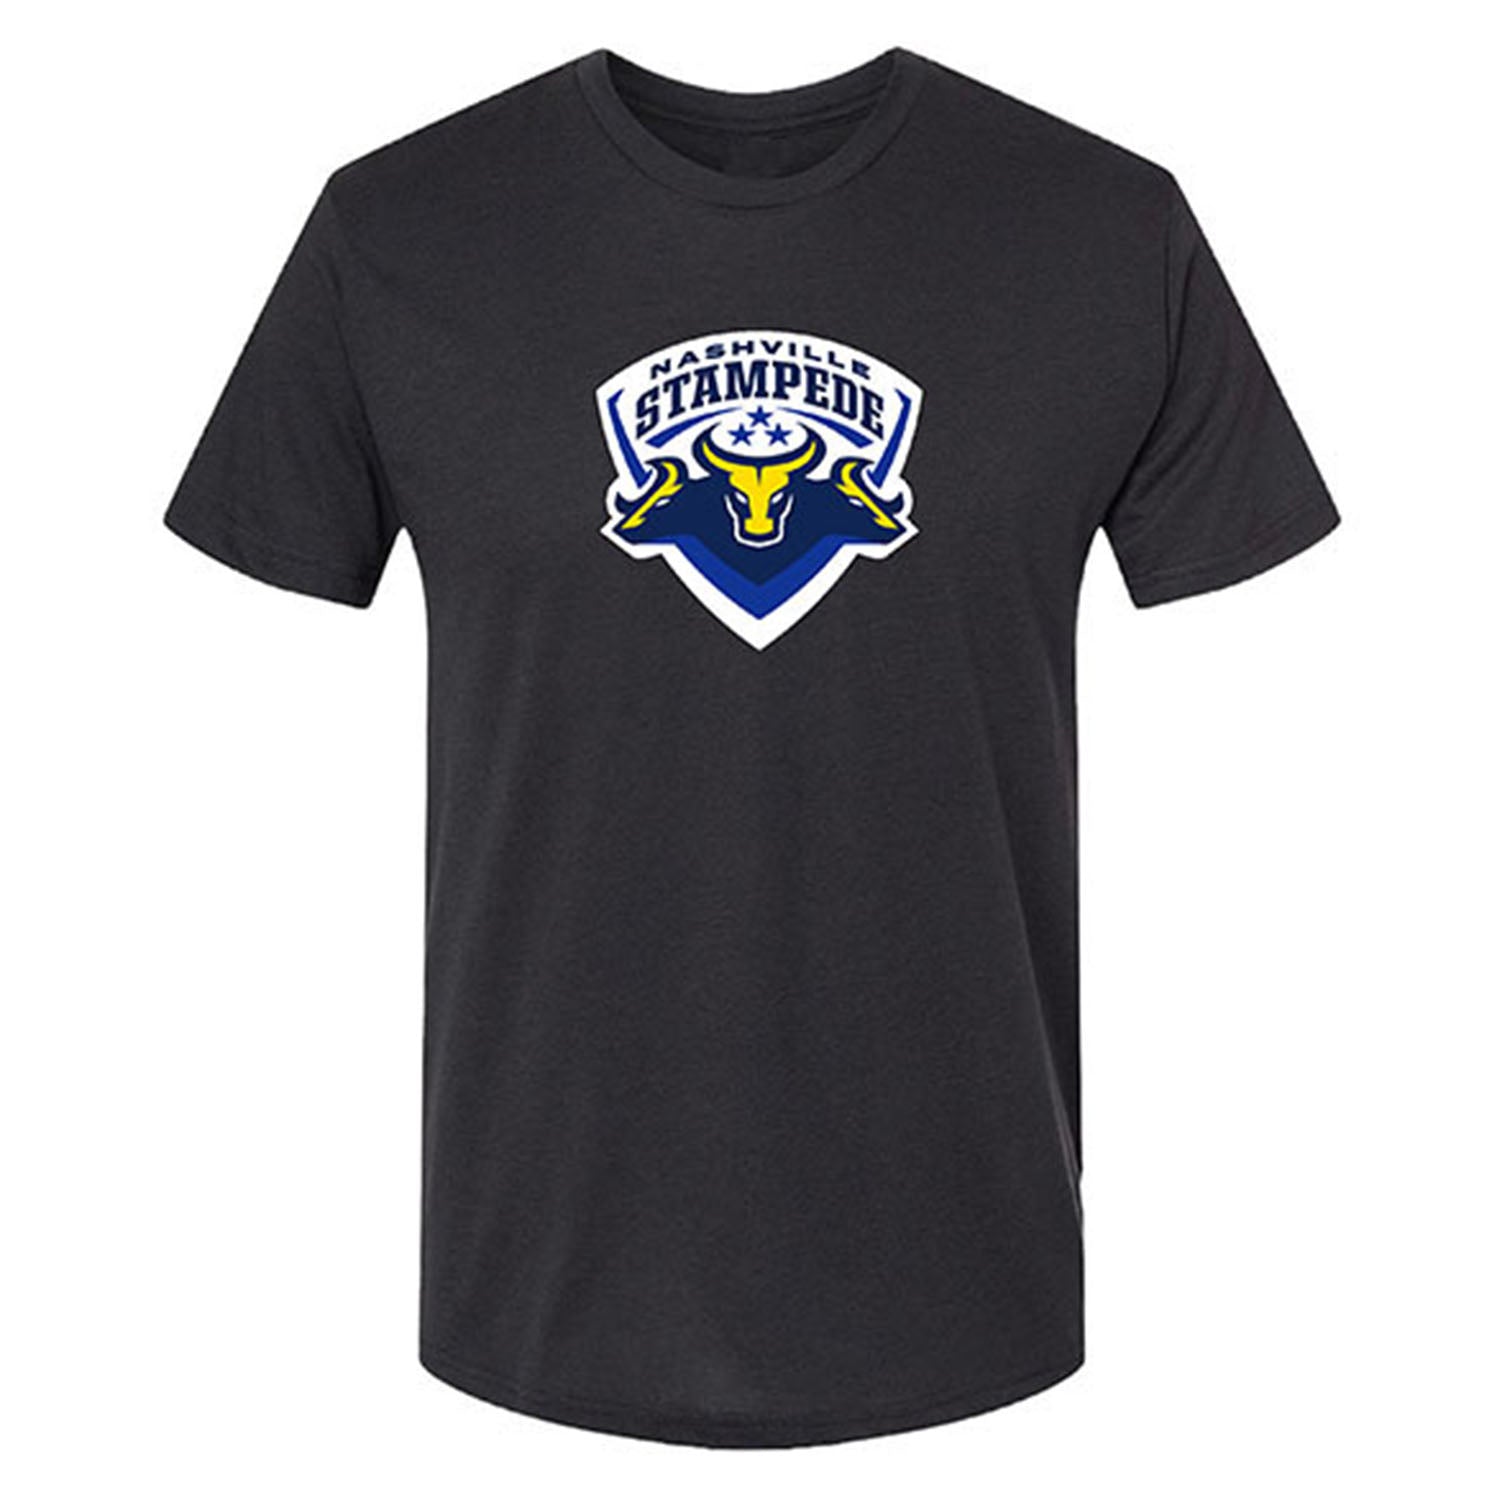 Nashville Stampede T-Shirt